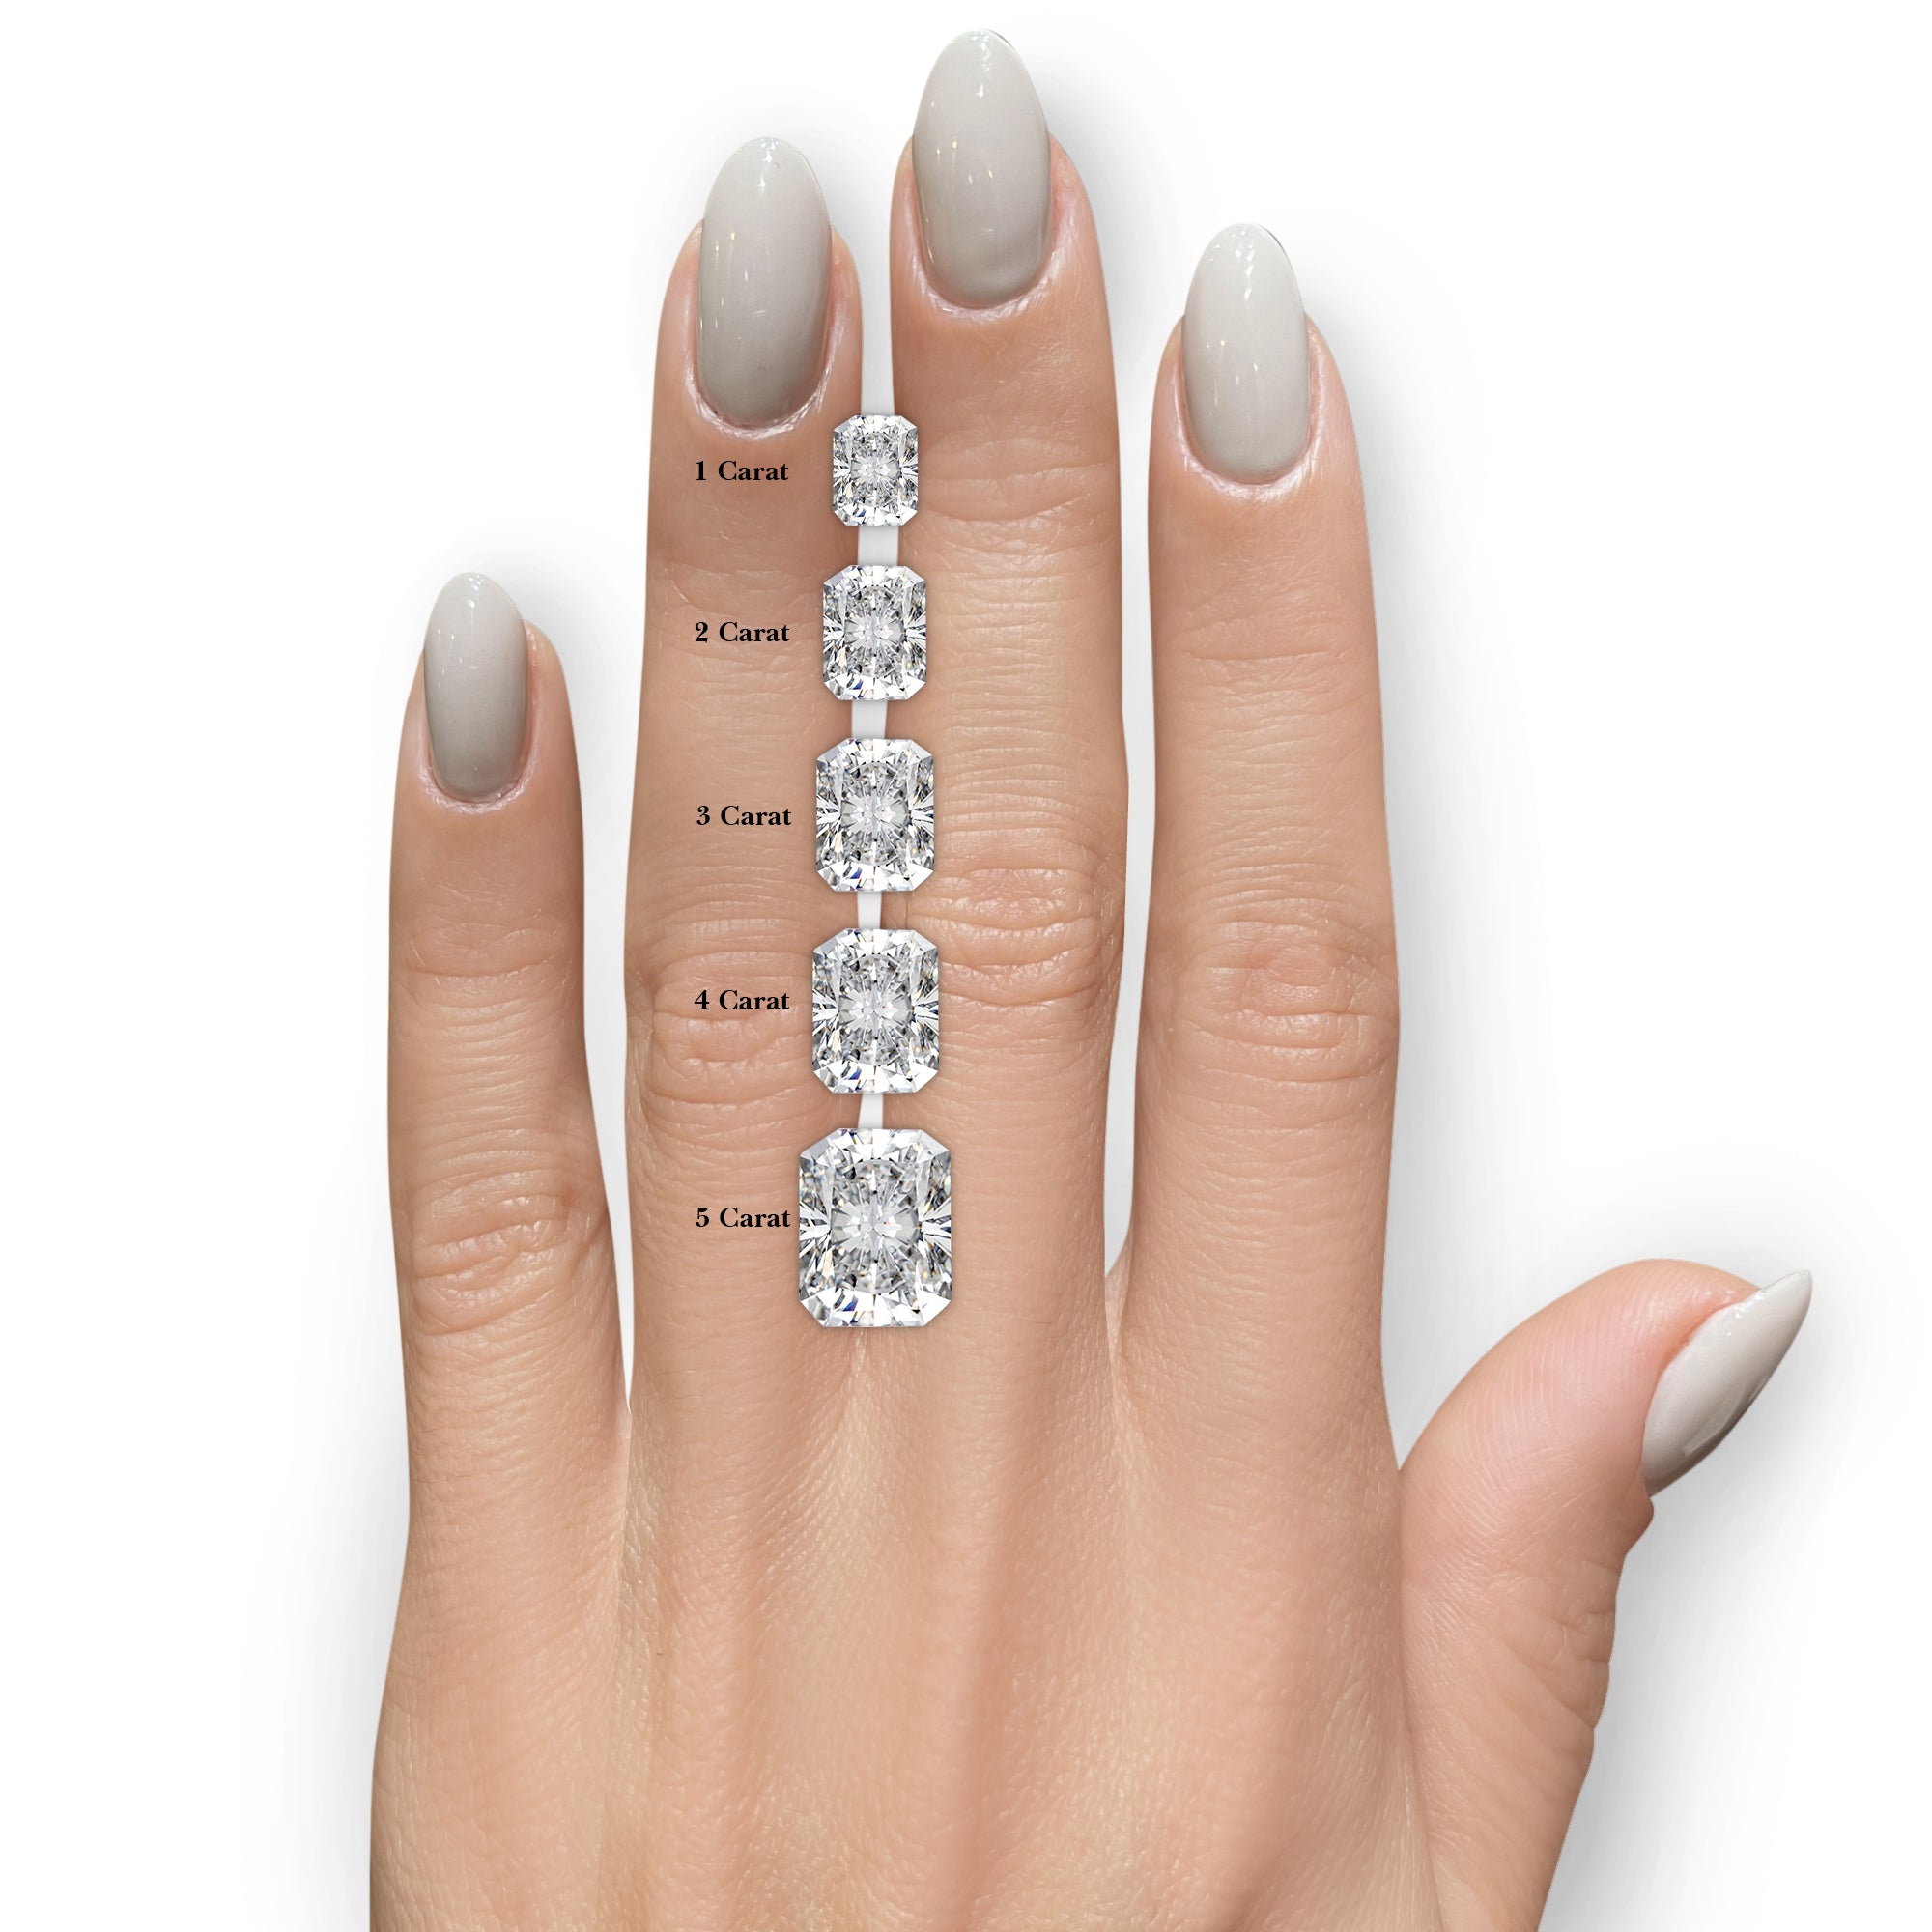 Harper Diamond Engagement Ring -Platinum